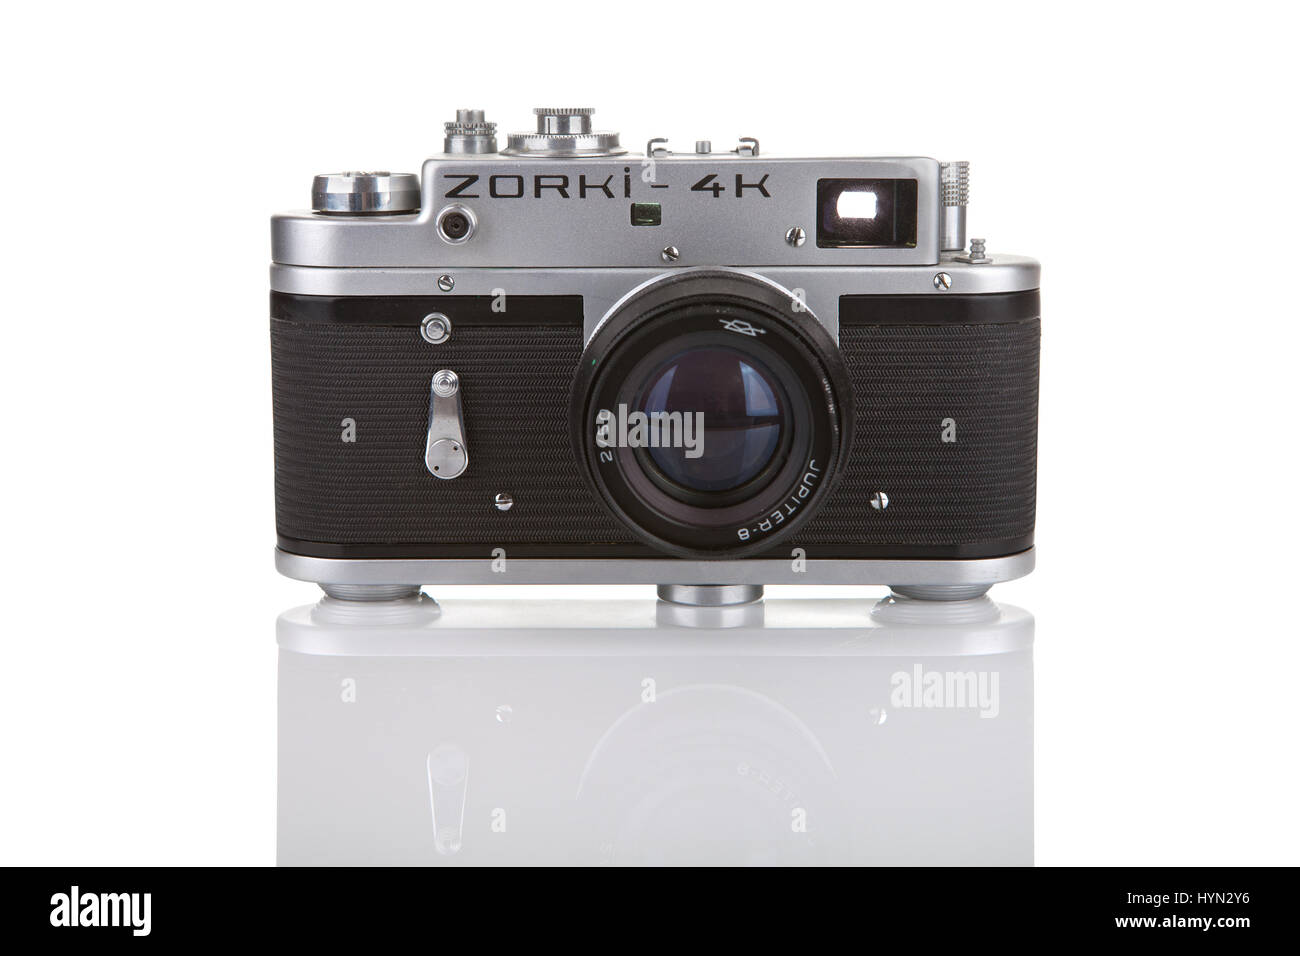 Zagabria, Croazia - Febbraio 04, 2014: Zorki 4 è stata probabilmente la più popolare di tutte le telecamere Zorki, introdotto nel 1956 da KMZ in fabbrica Krasnogorsk, Rus Foto Stock